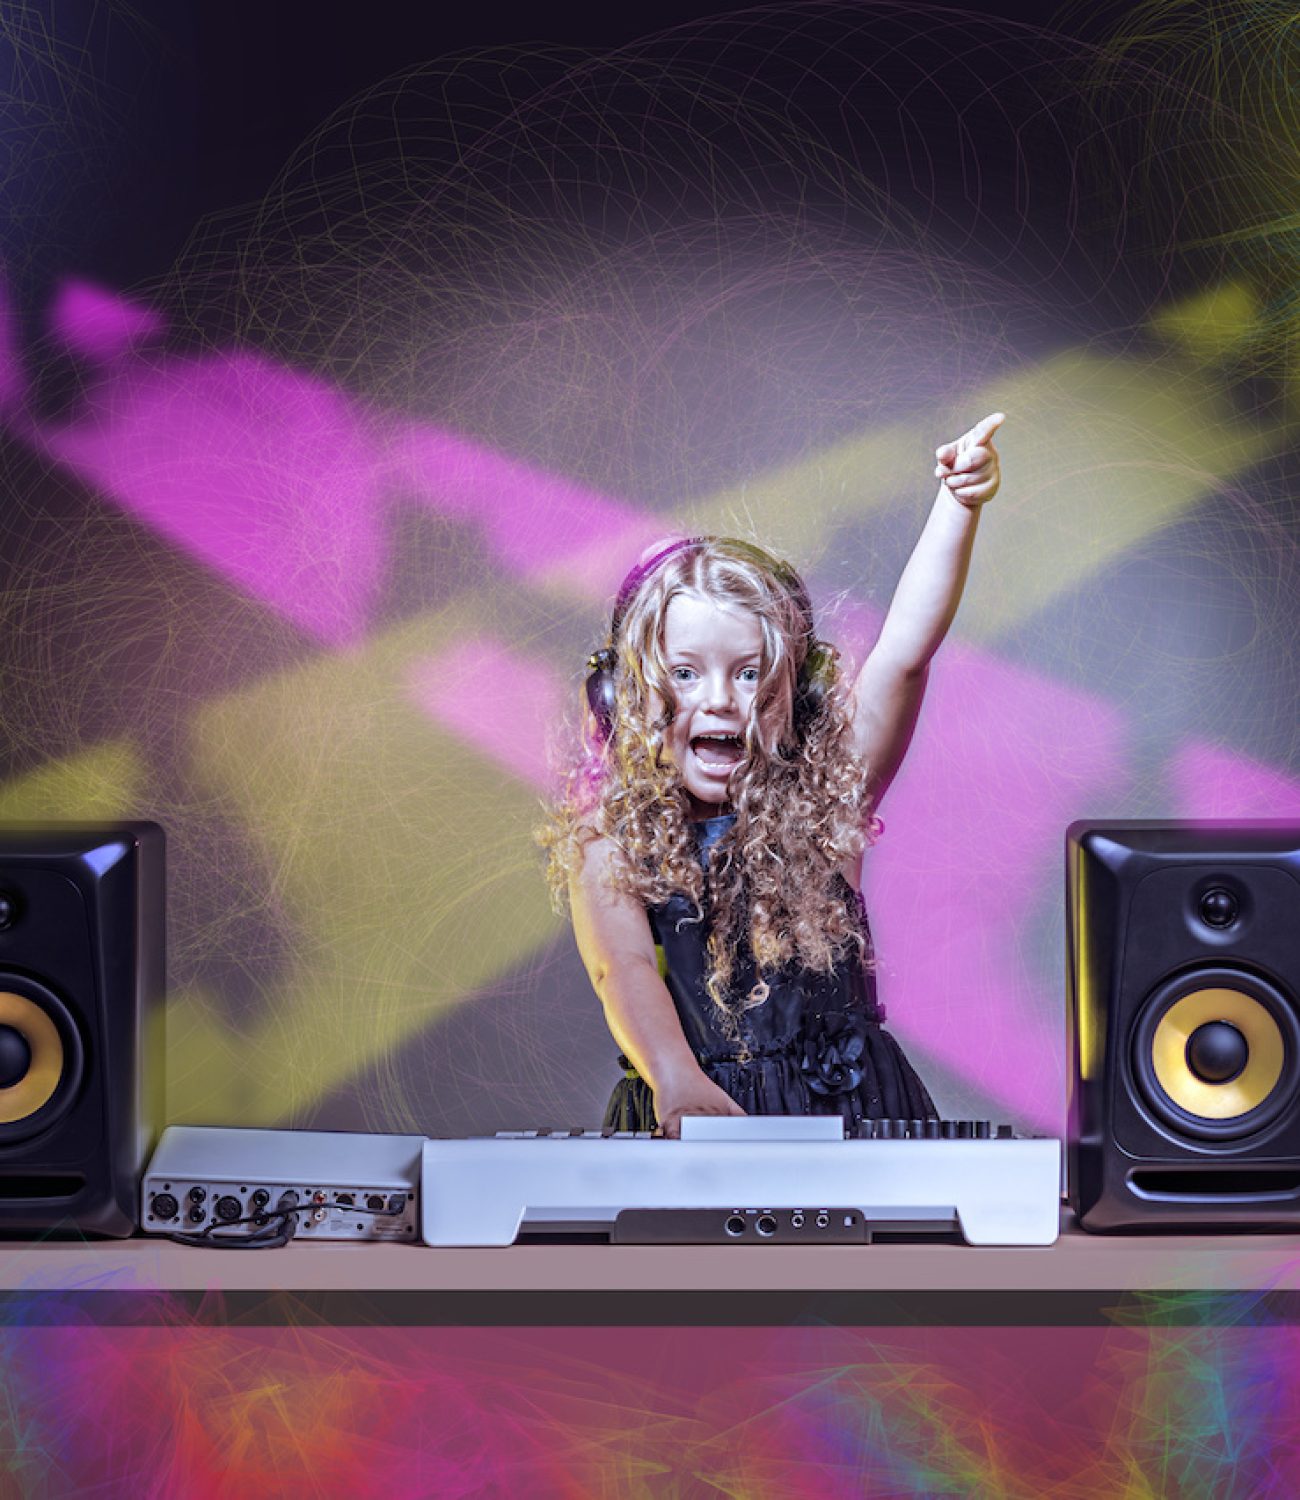 a gradeschooler girl as DJ at the kids disco